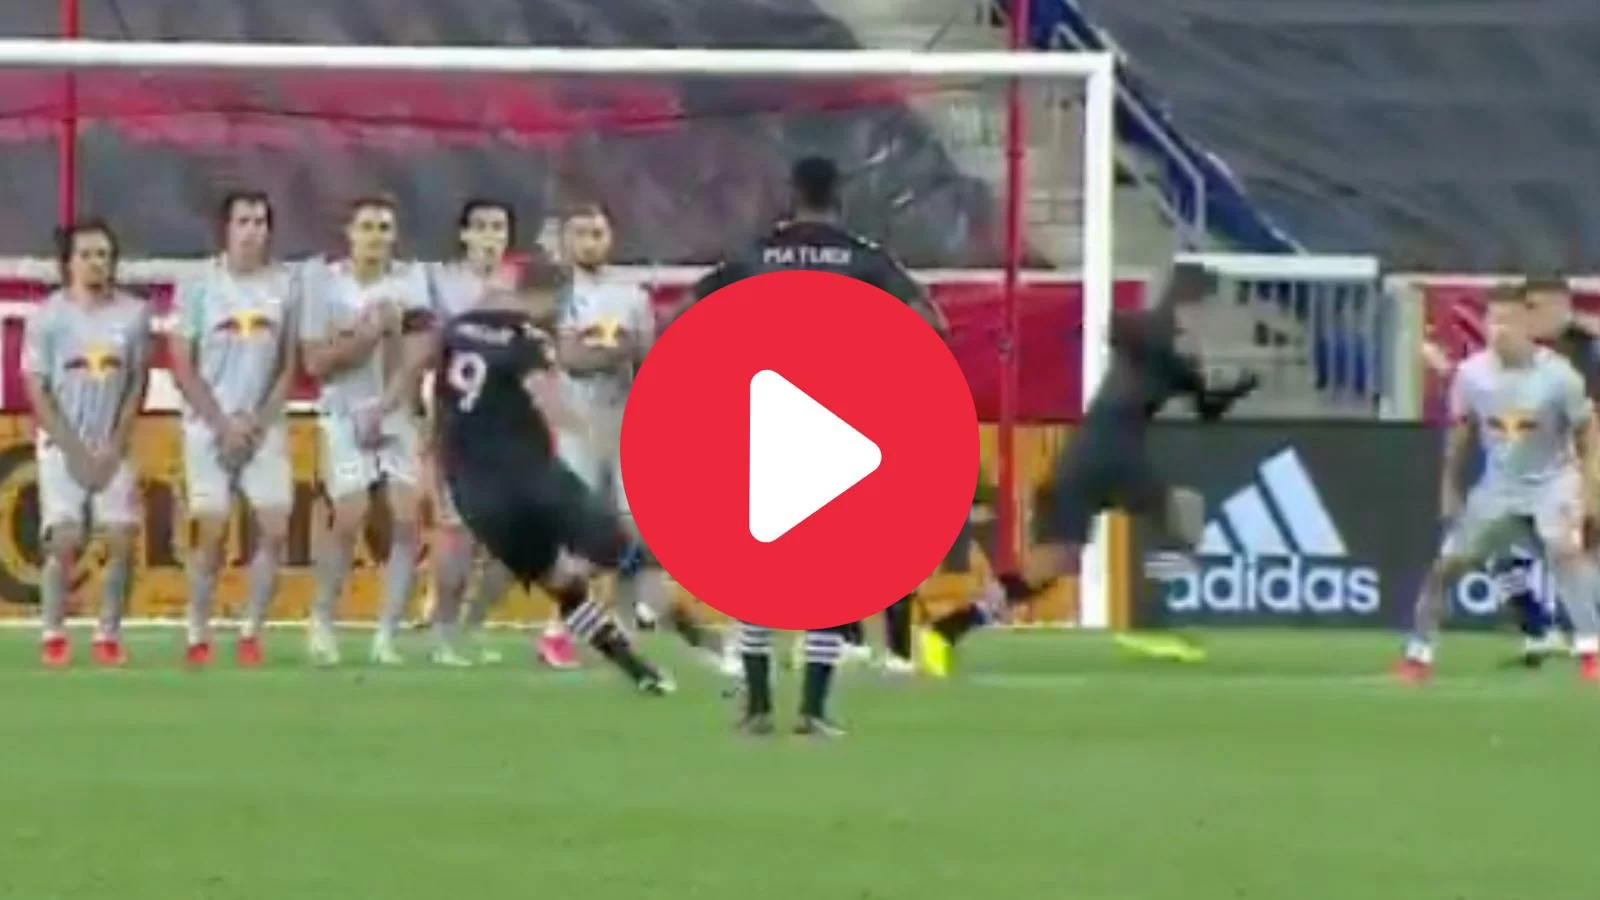 VIDEO – Higuain, il primo gol in MLS è da paura